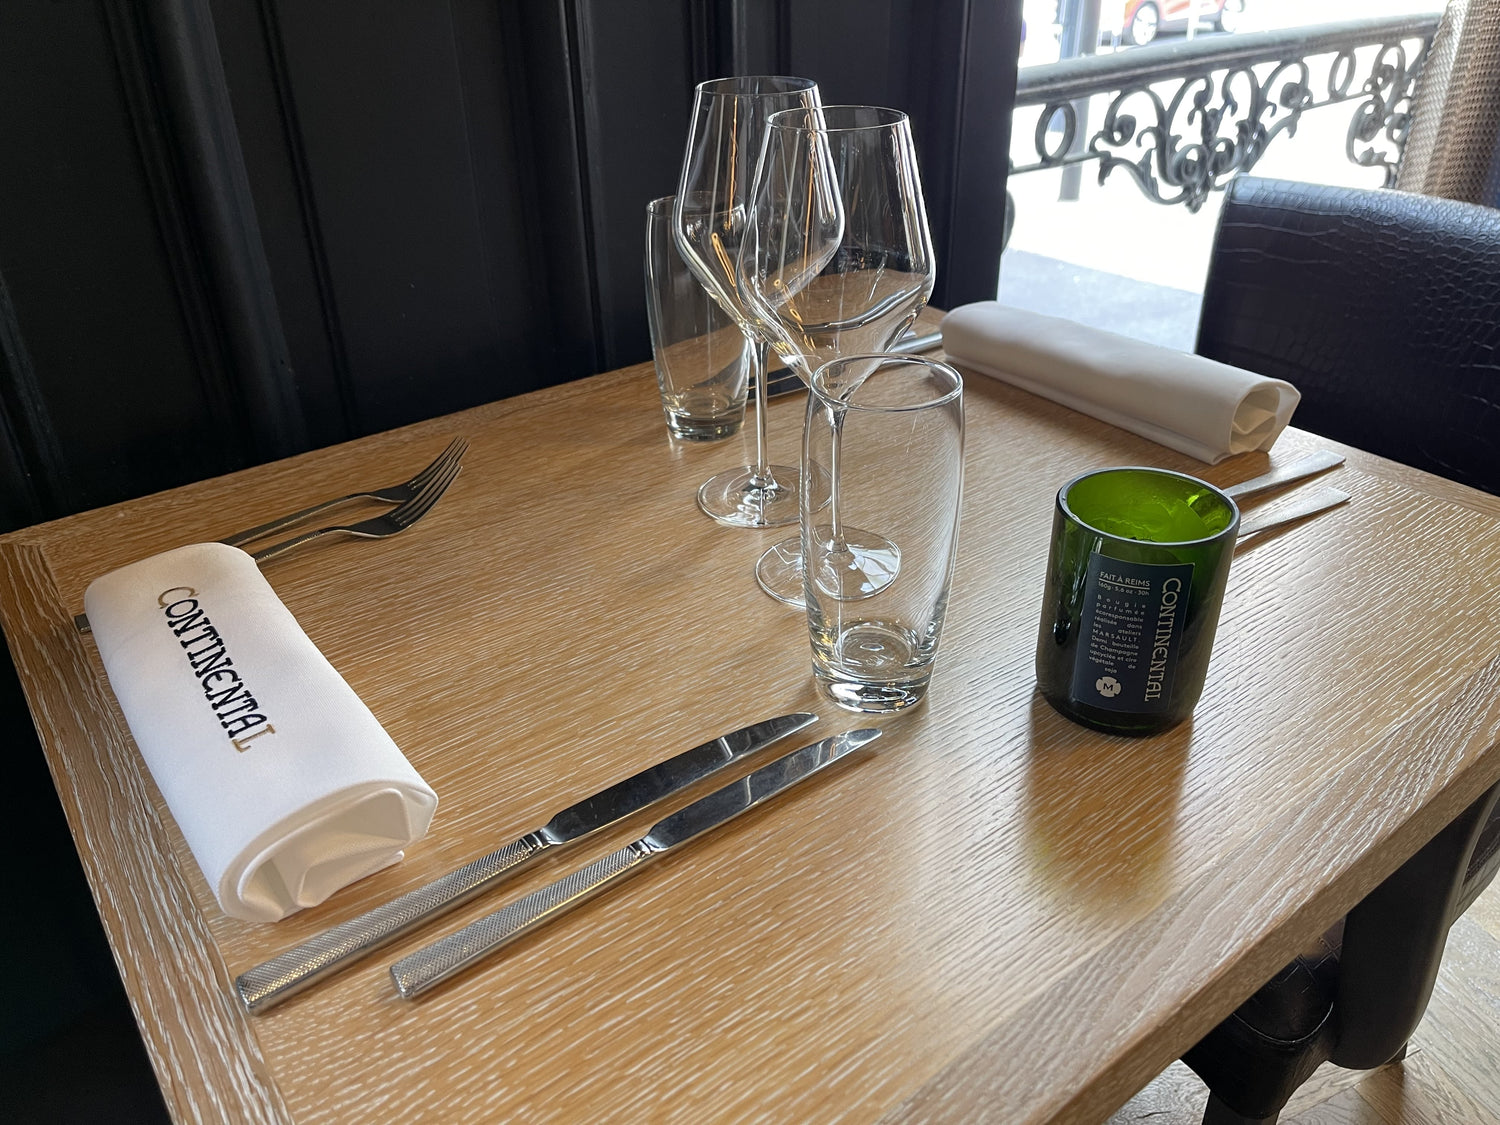 Bougie Marsault format demi-bouteille posée sur une table du restaurant Le Continental à Reims. 